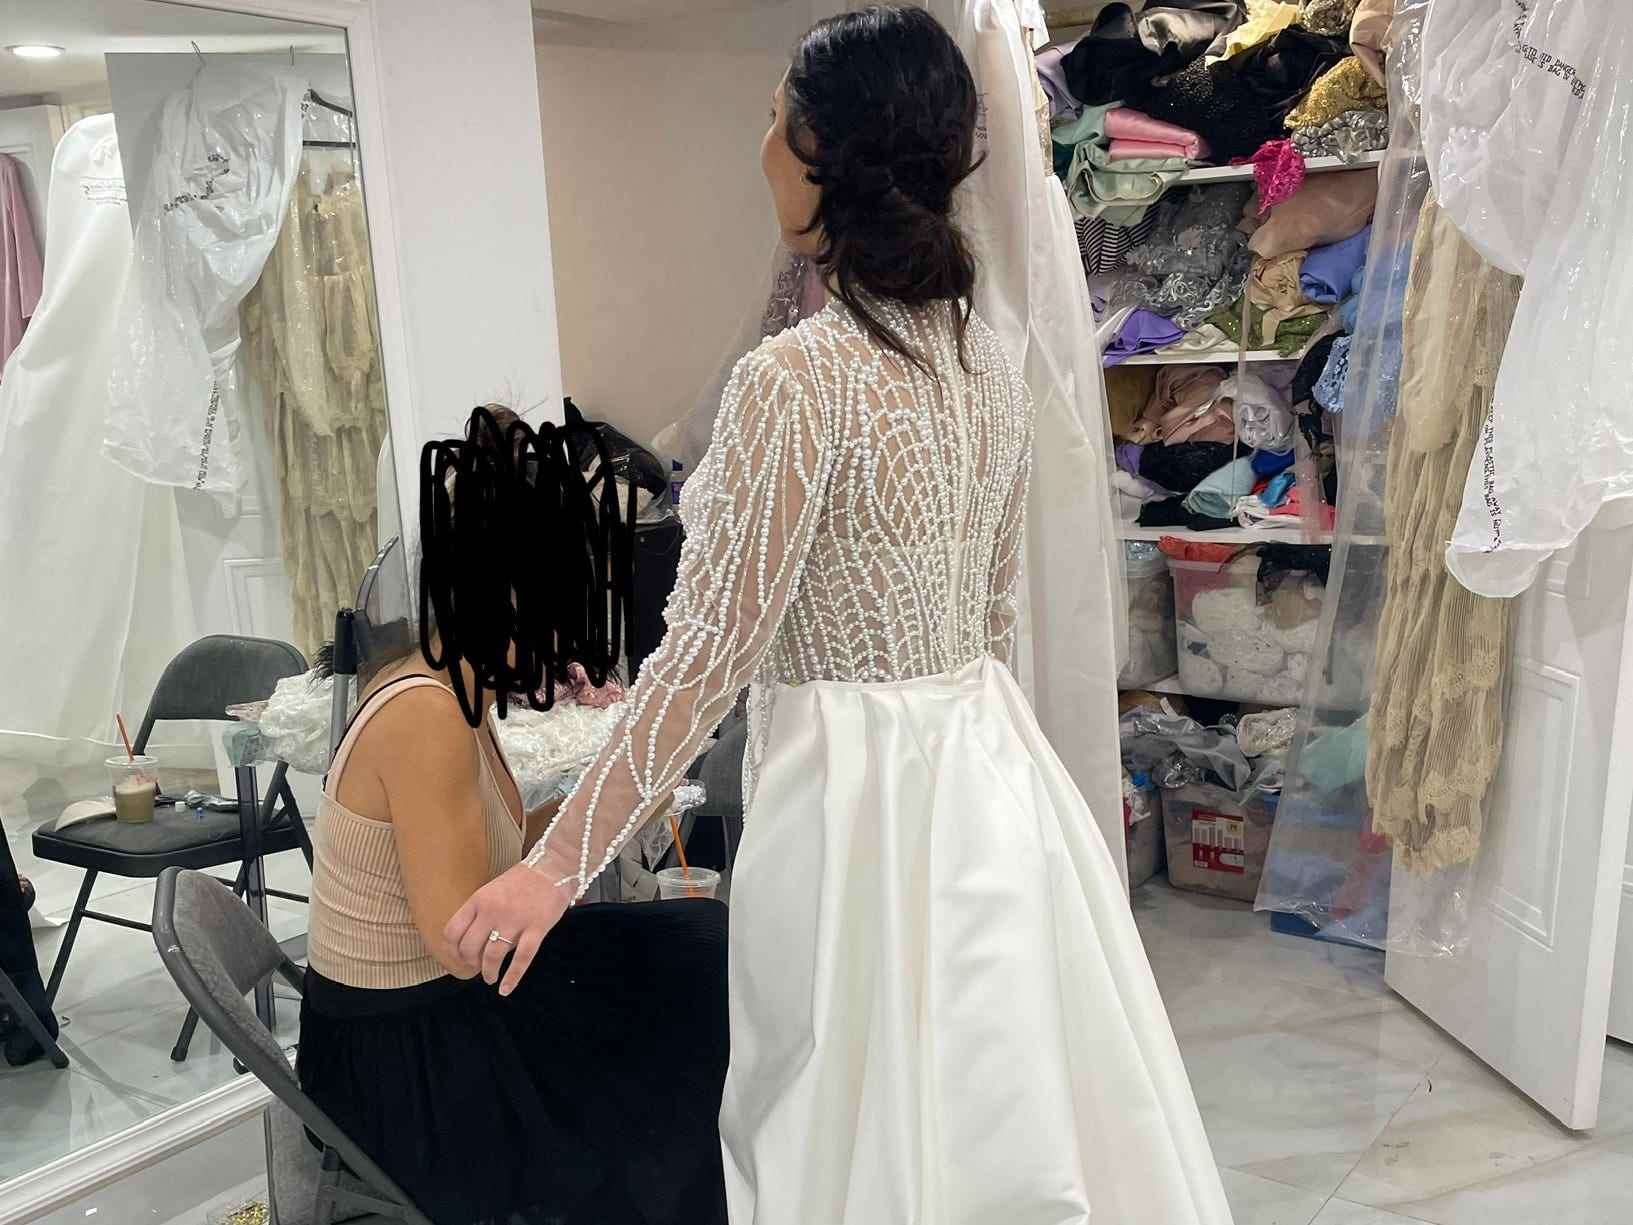 Pepa probiert das individuelle Hochzeitskleid an, mit der Rückseite zur Kamera